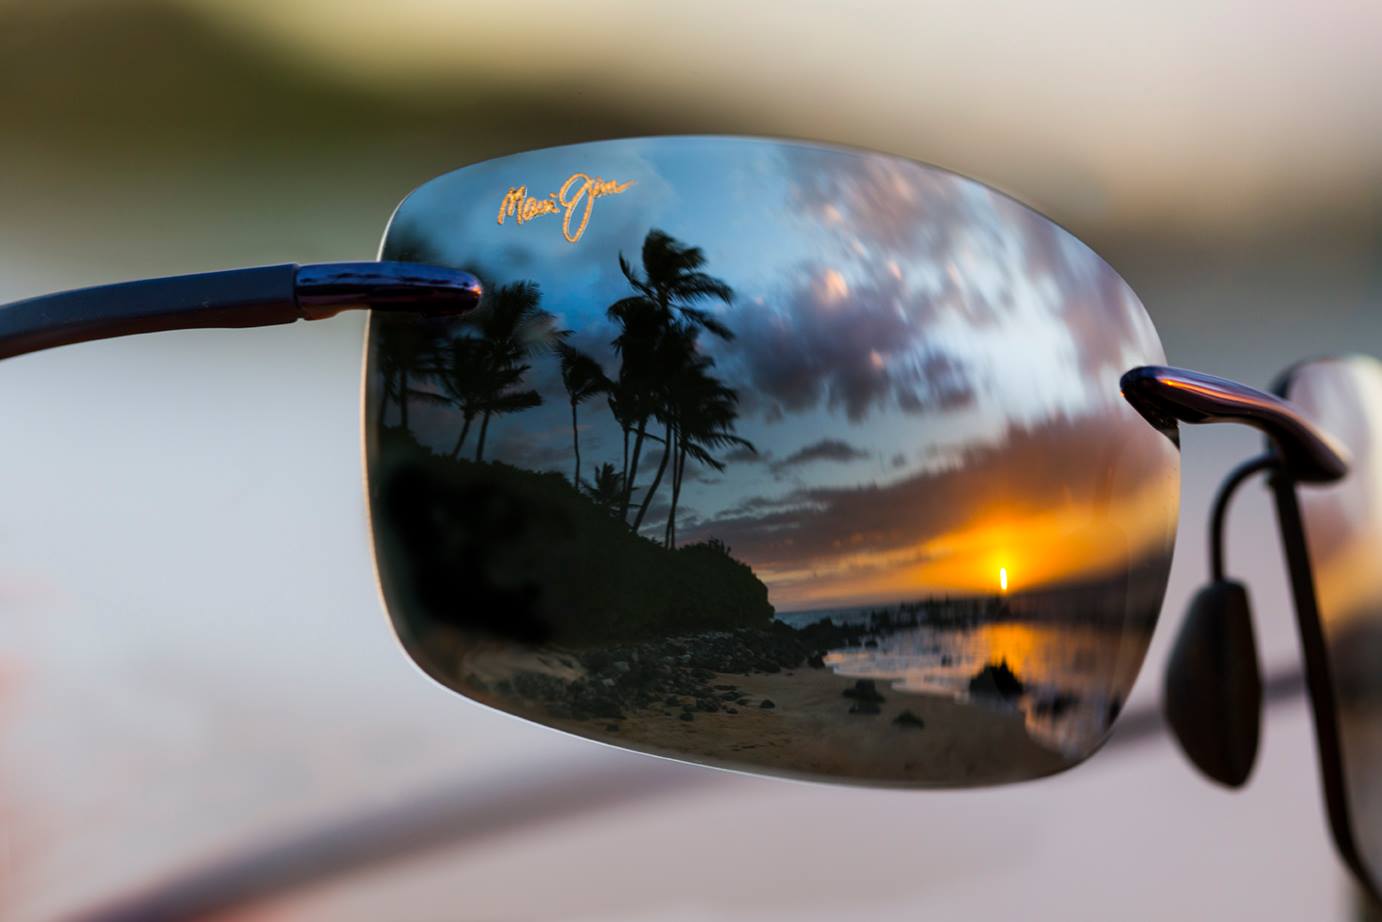 Maui Jim Bifocal Reader Sunglasses | The Ultimate Guide